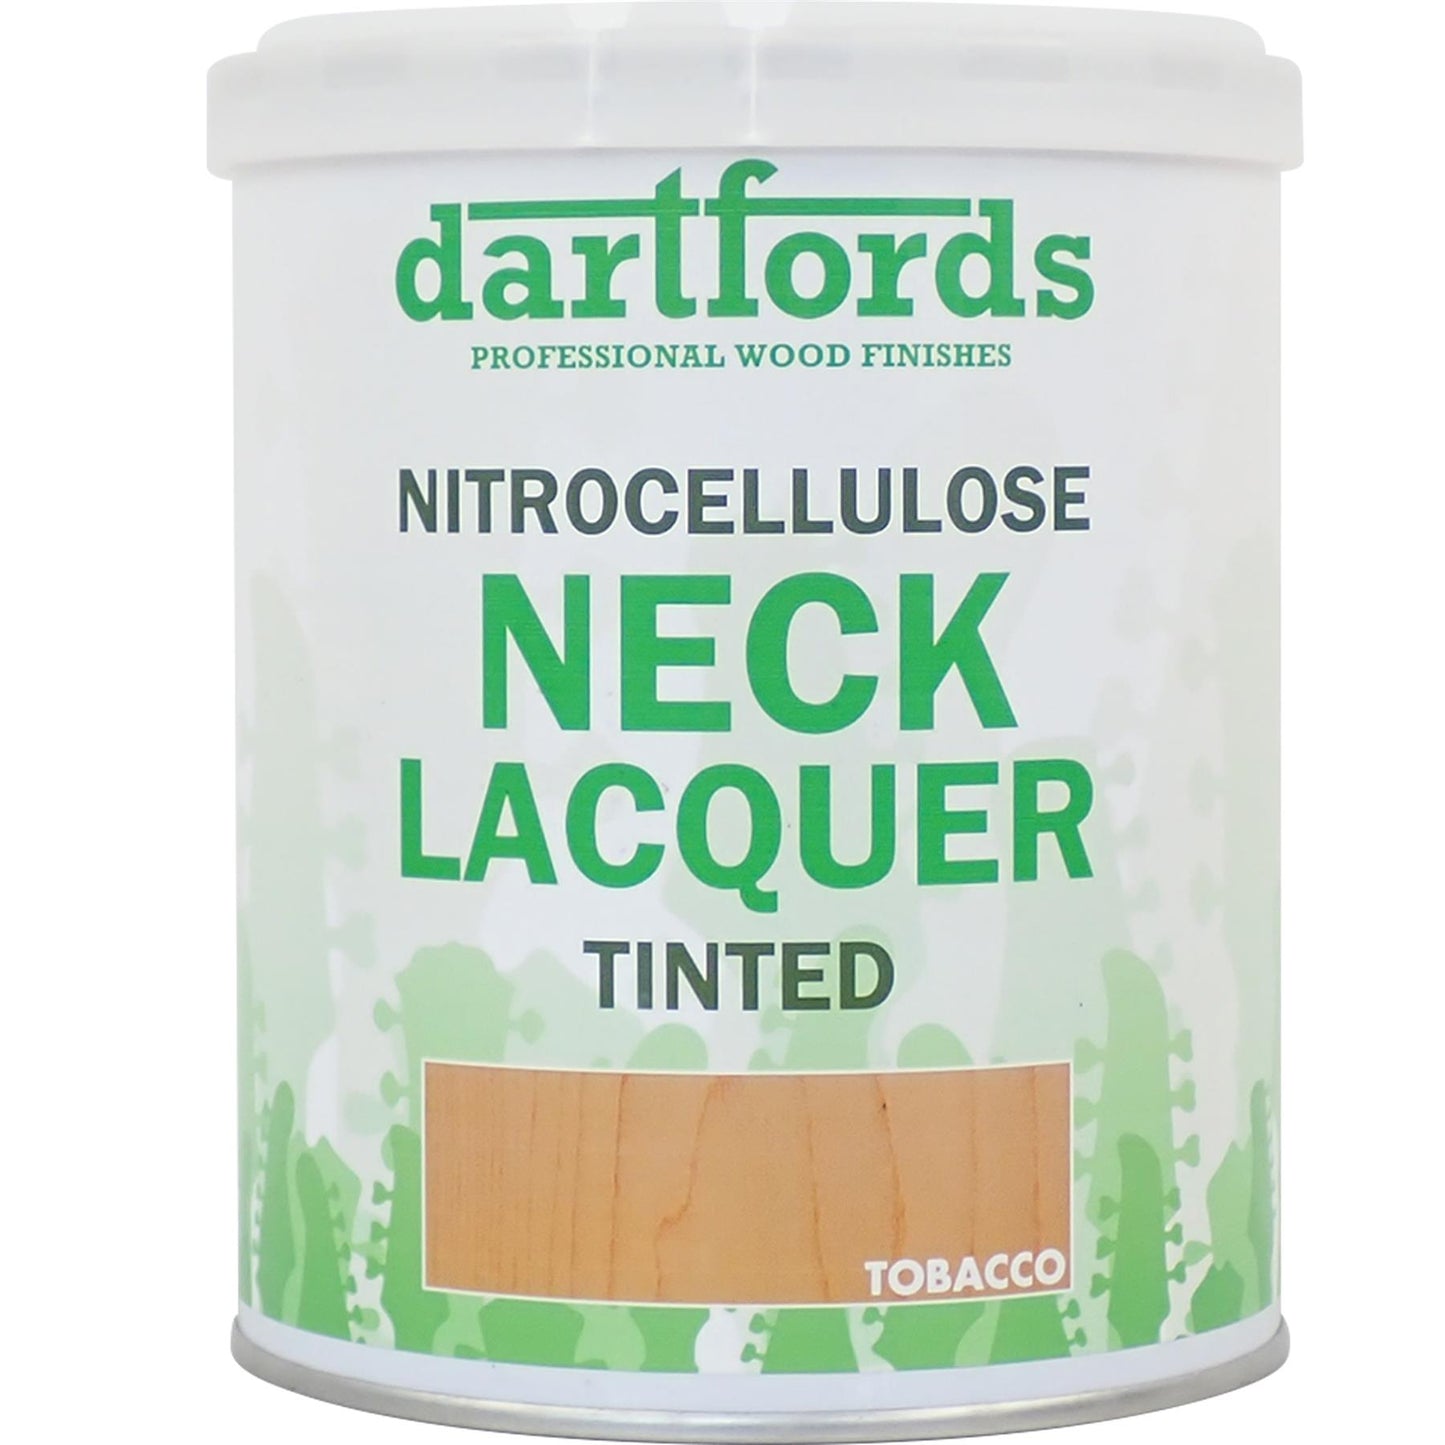 dartfords Tobacco Nitrocellulose Guitar Neck Lacquer - 1 litre Tin